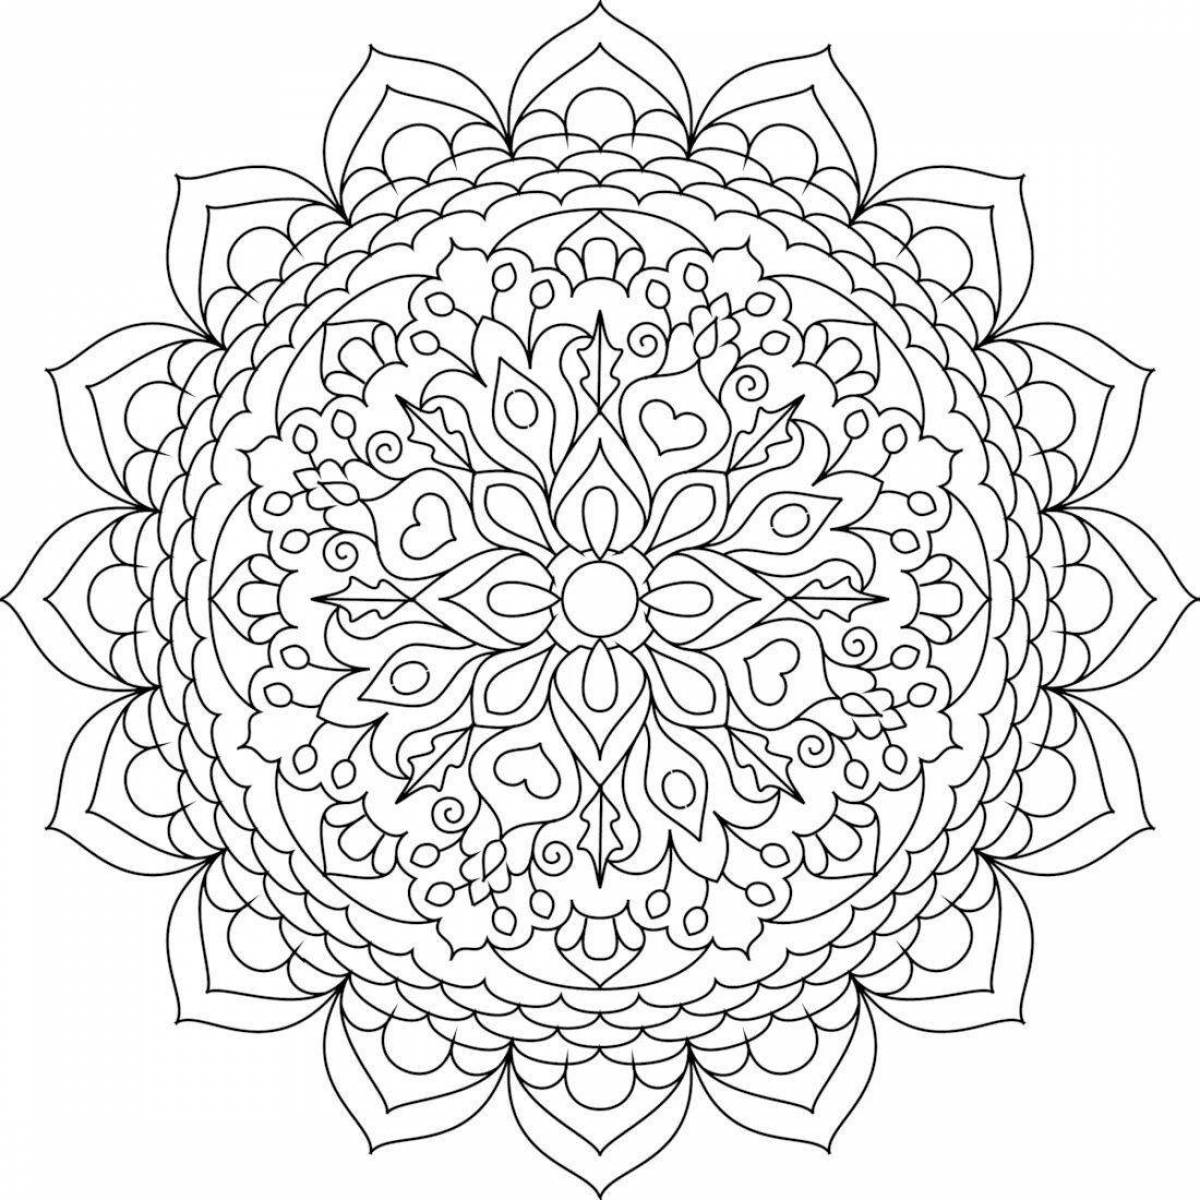 Harmonious coloring video meditative mandala antistress